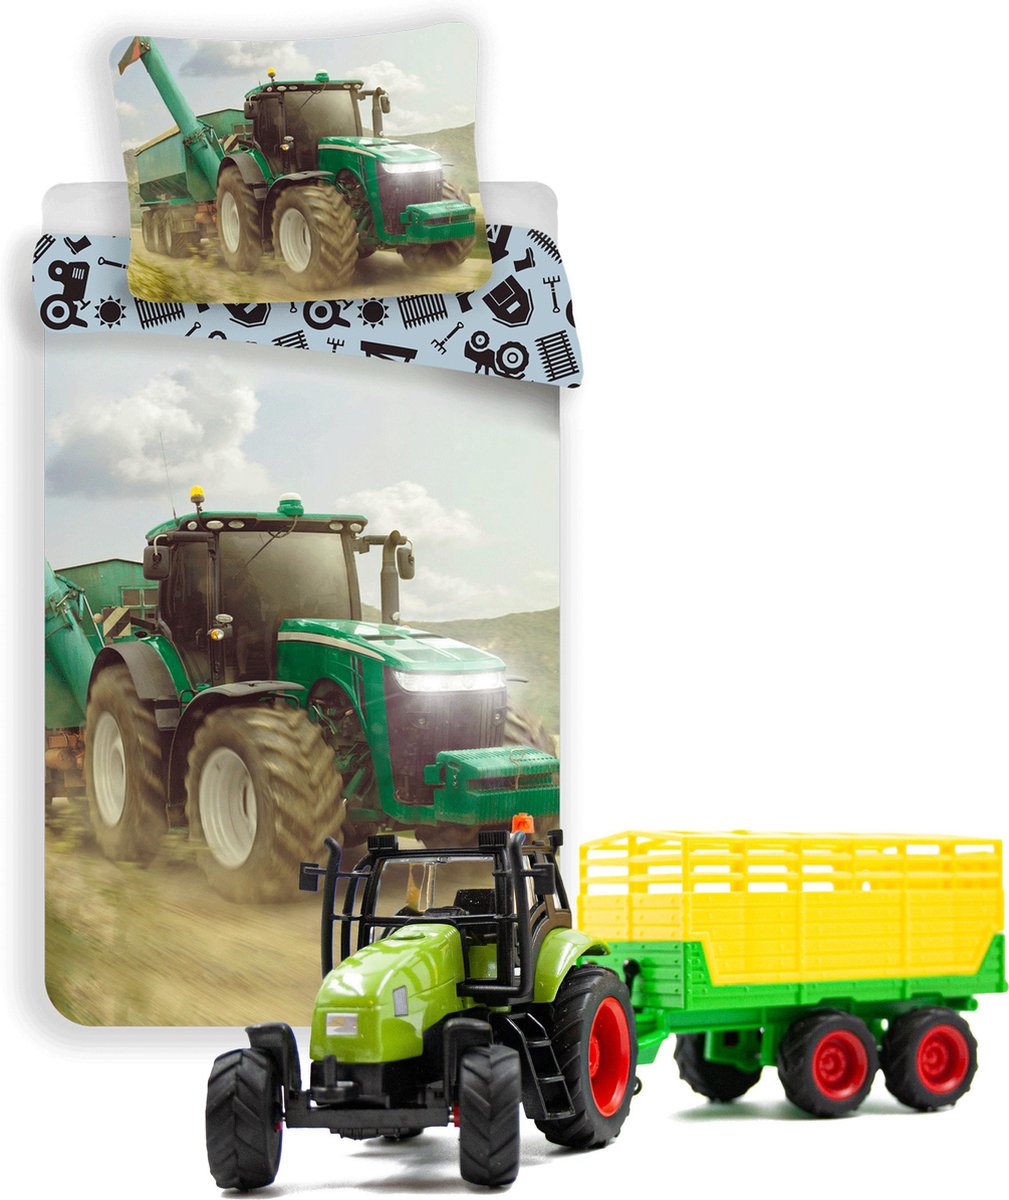 Dekbedovertrek groene Tractor - Eenpersoons - 140 x 200 cm - katoen- Boerderij dekbed- incl. Tractor speelset met Silagewagen.